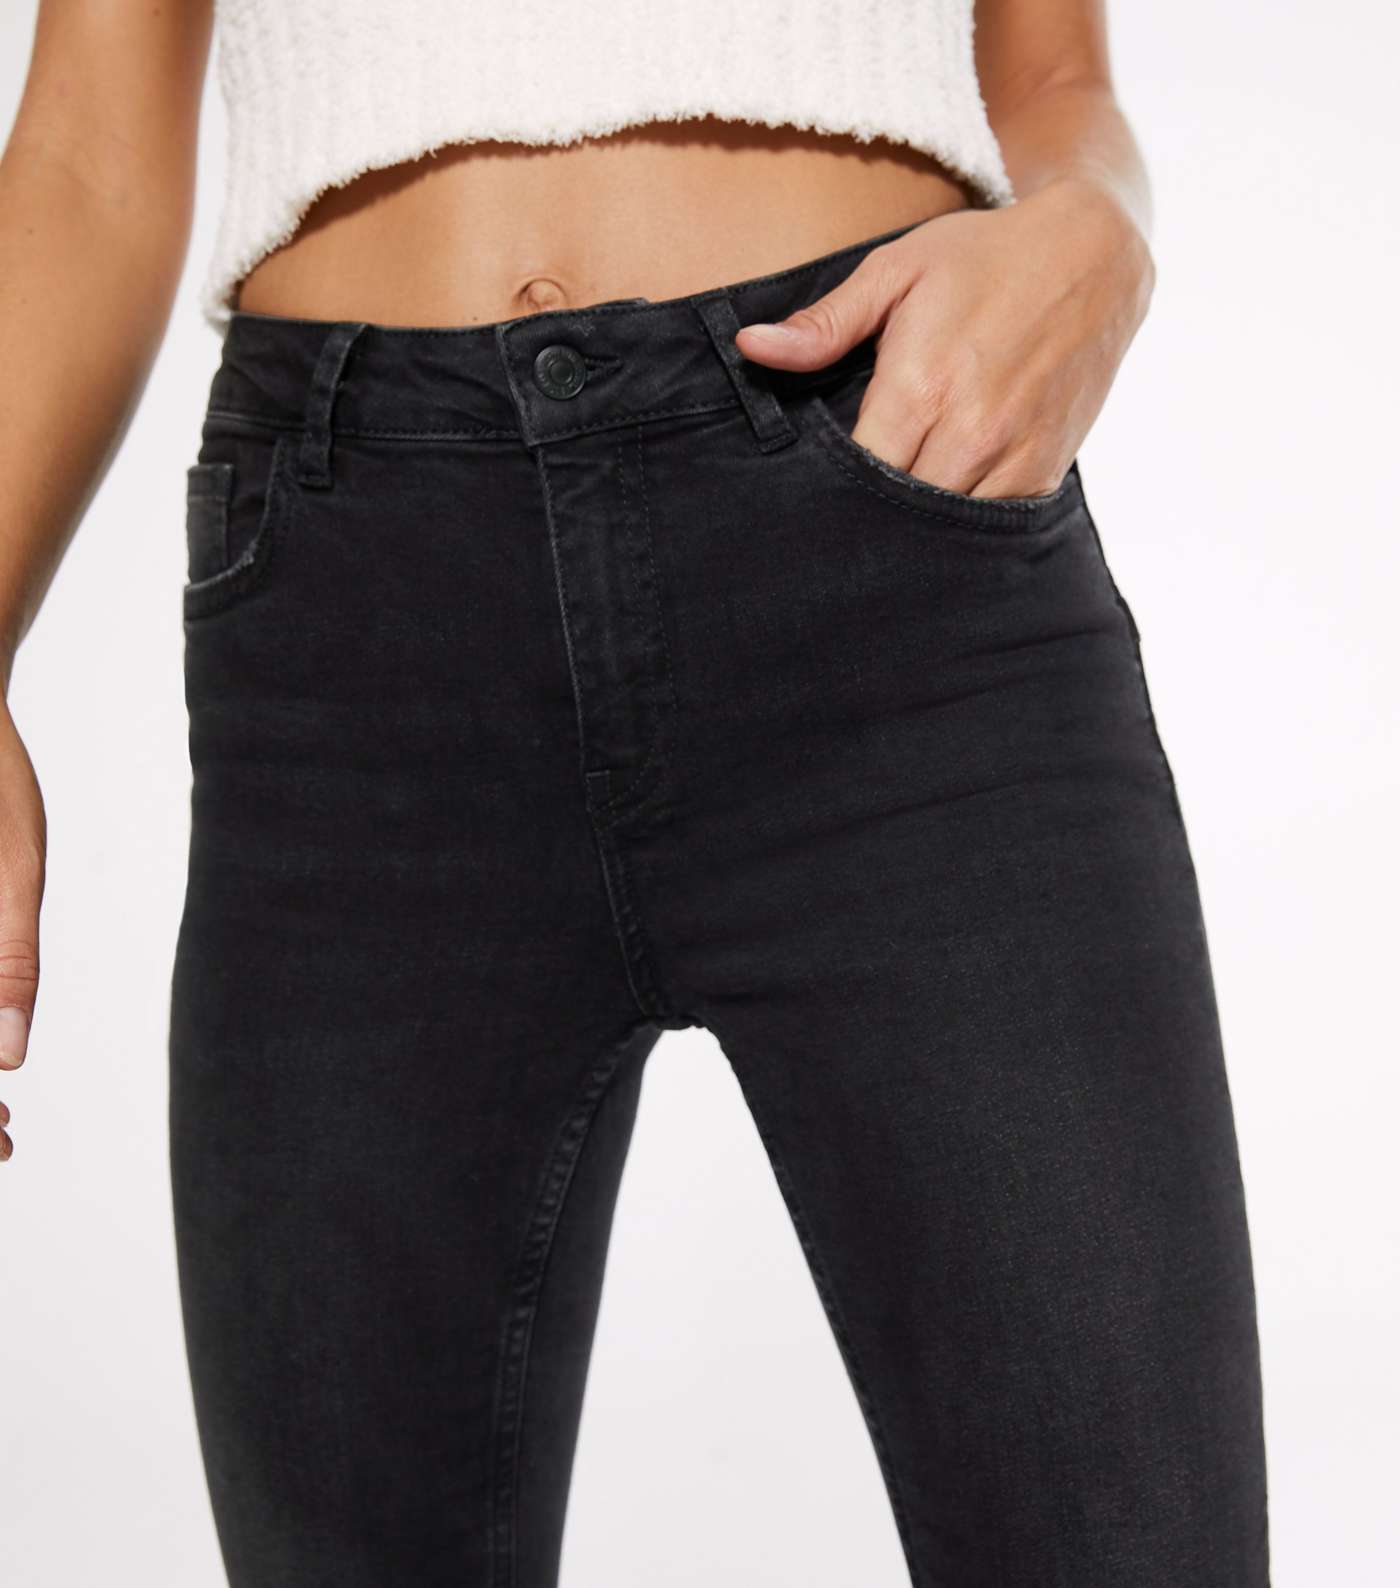 Petite Black 'Lift & Shape' Jenna Skinny Jeans Image 3